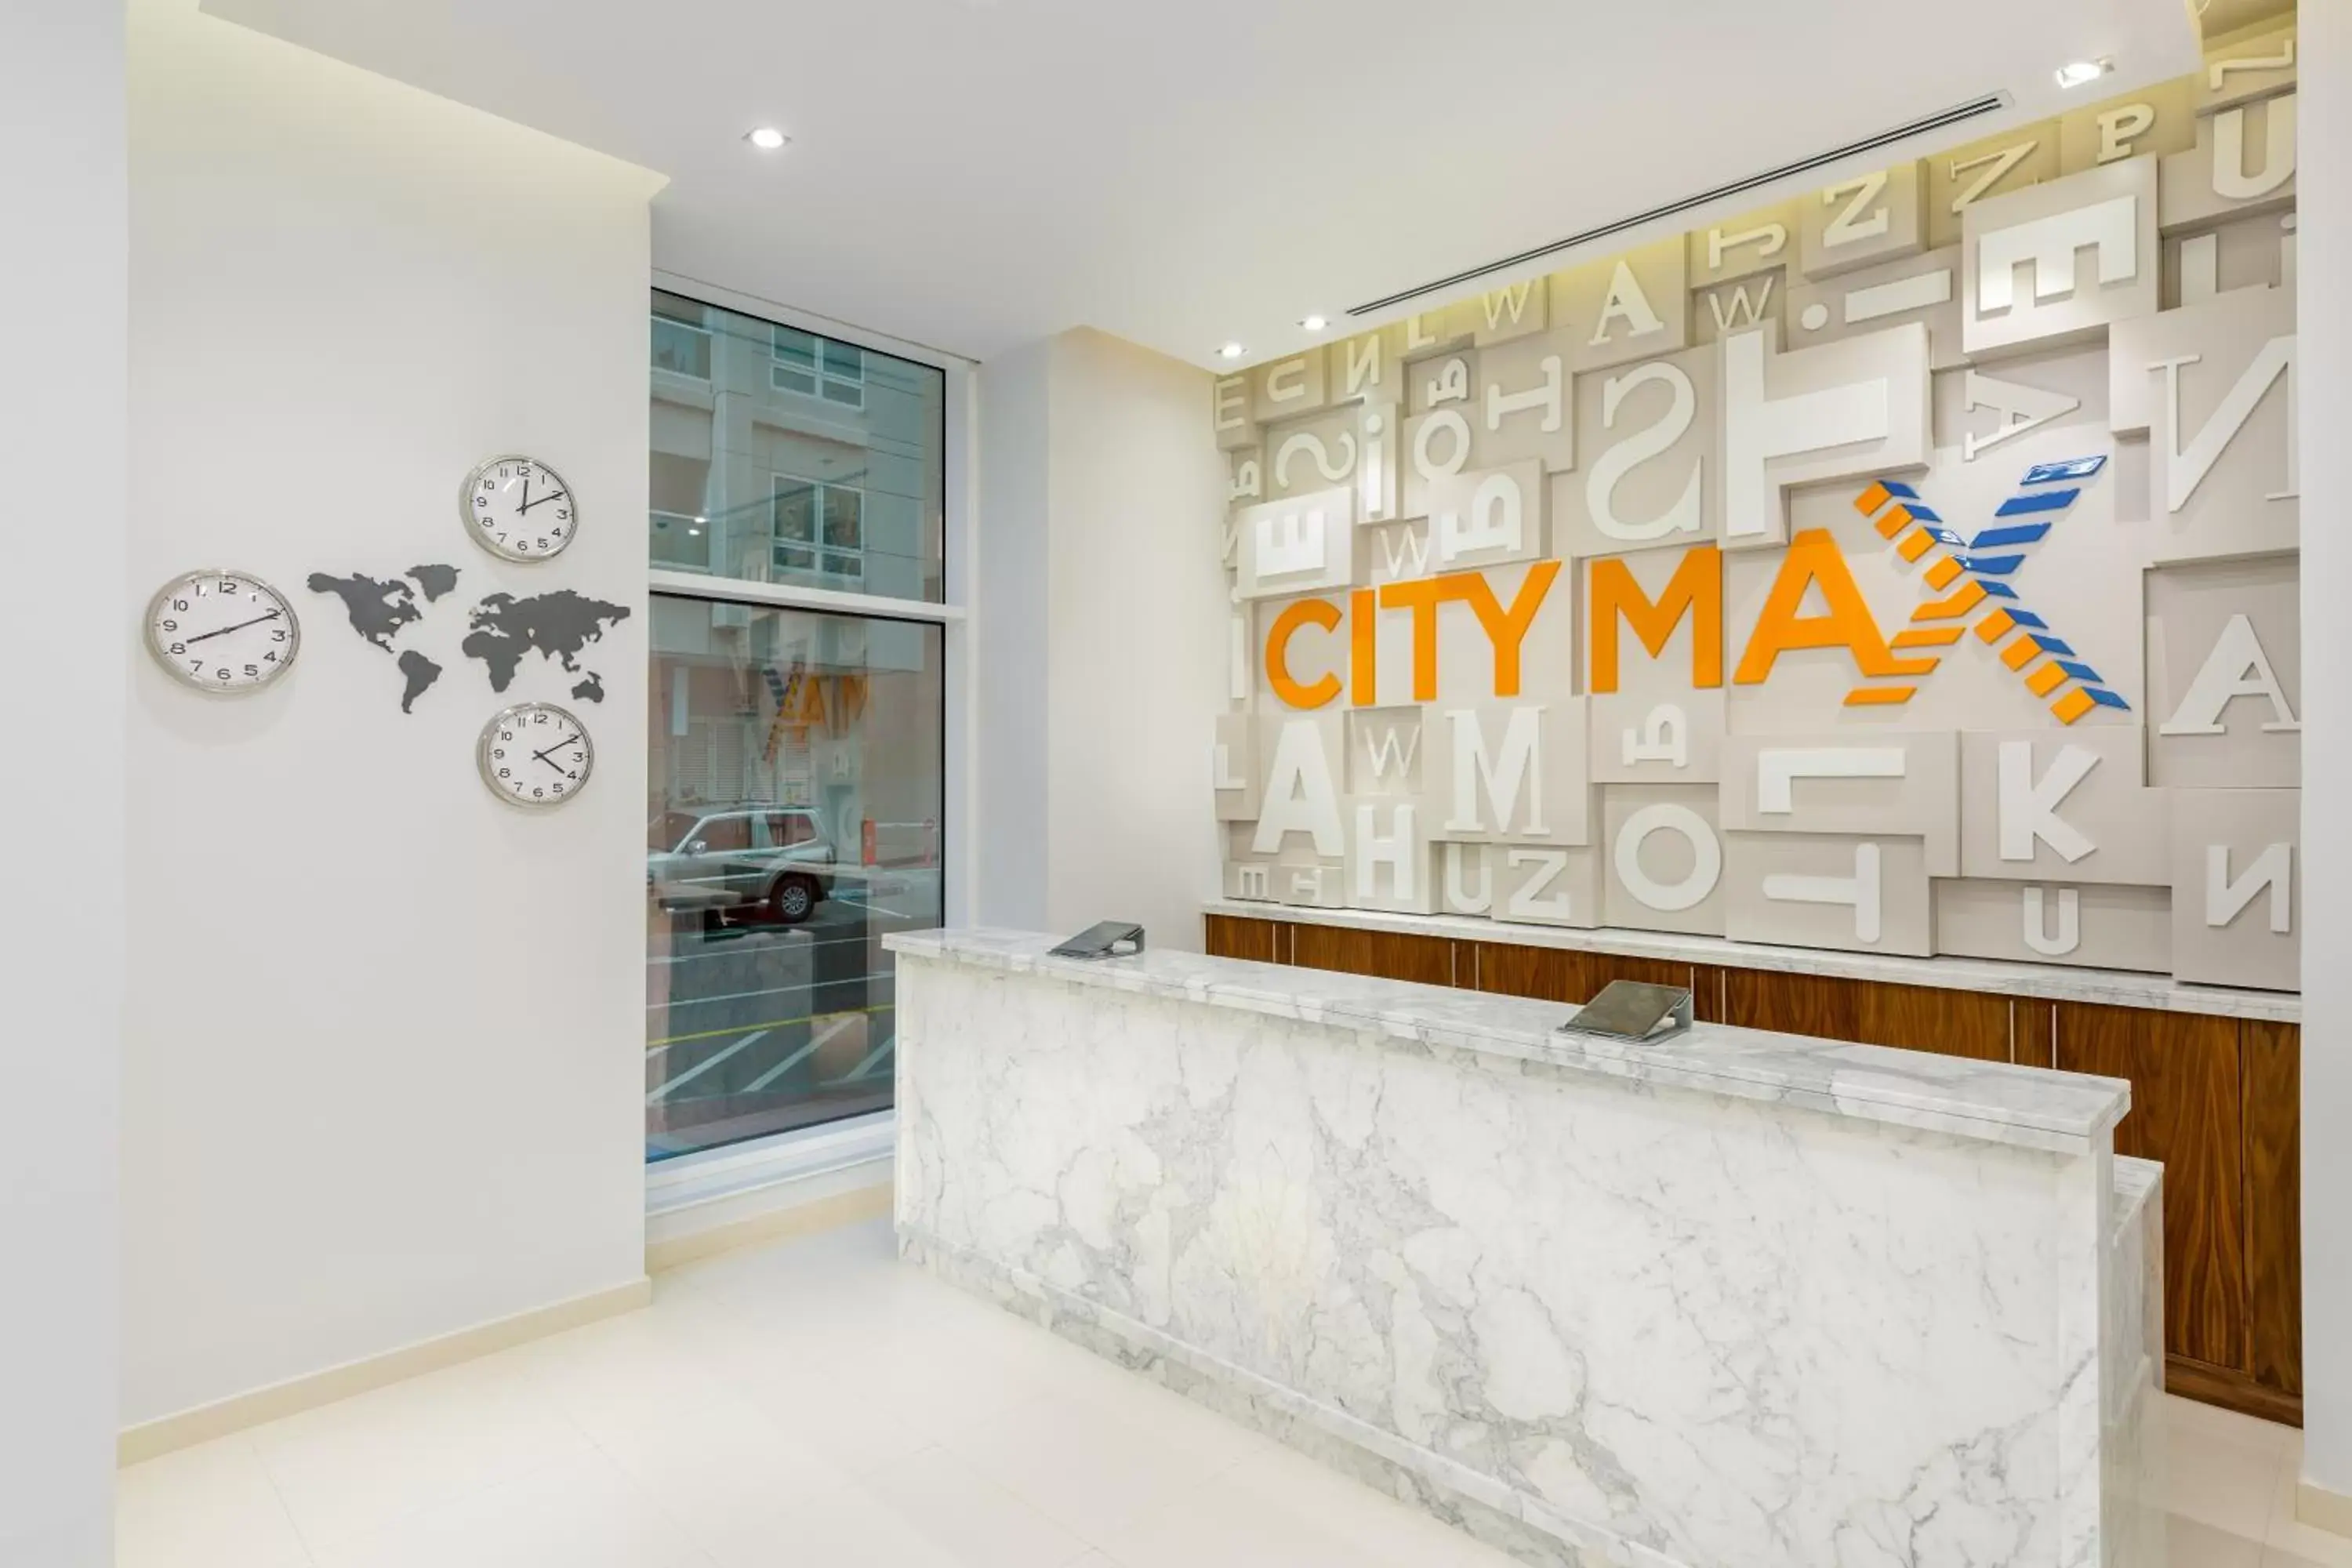 Lobby or reception in Citymax Hotel Al Barsha